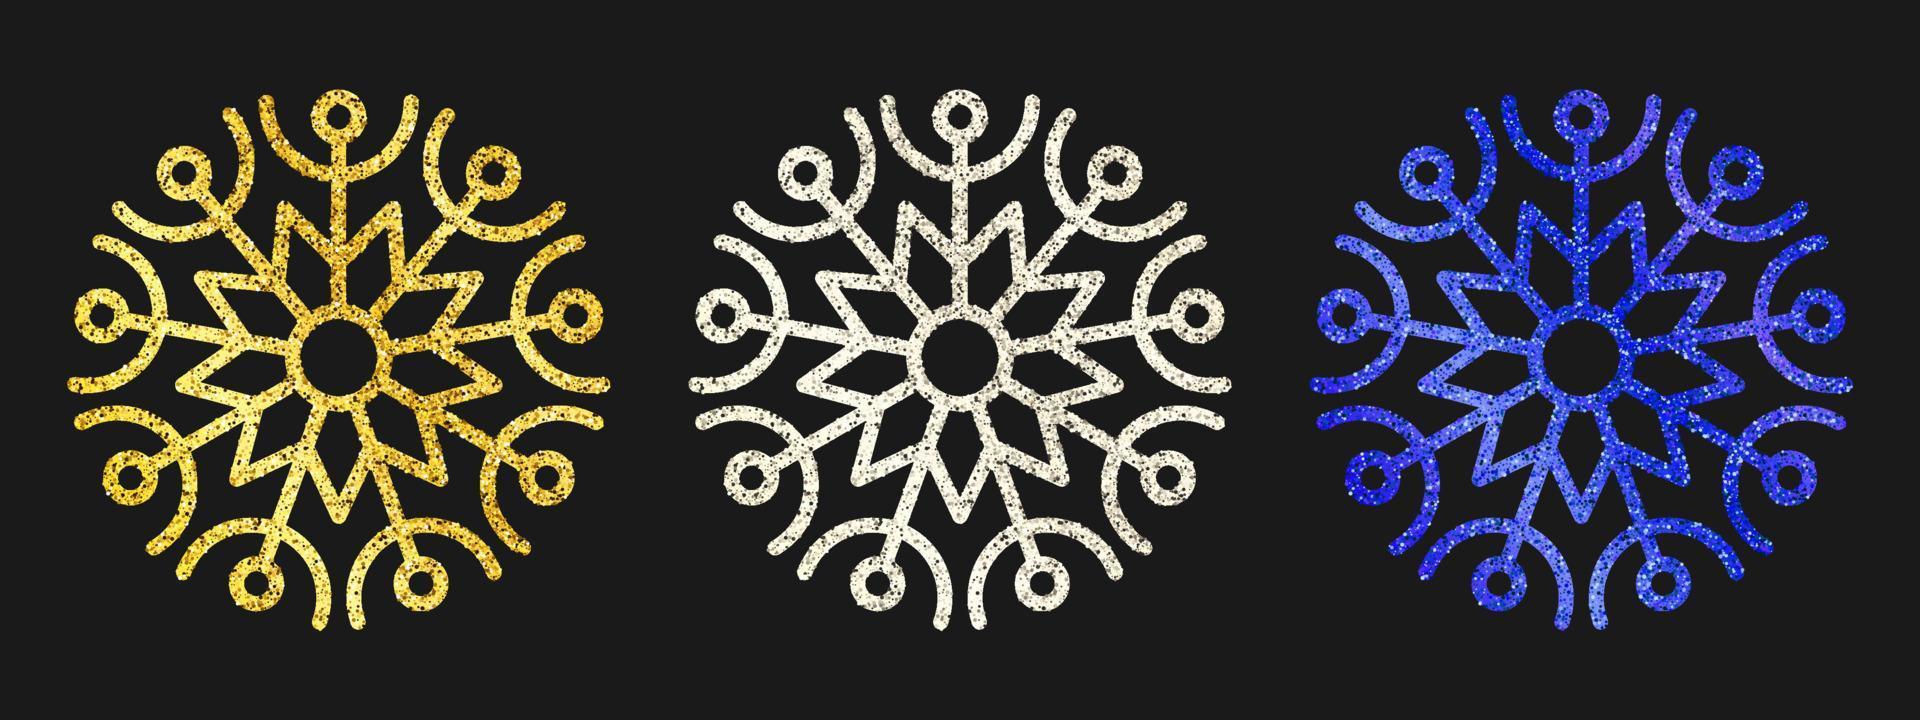 glitter snöflingor på mörk bakgrund. uppsättning av tre guld, silver- och blå glitter snöflingor. jul och ny år dekoration element. vektor illustration.